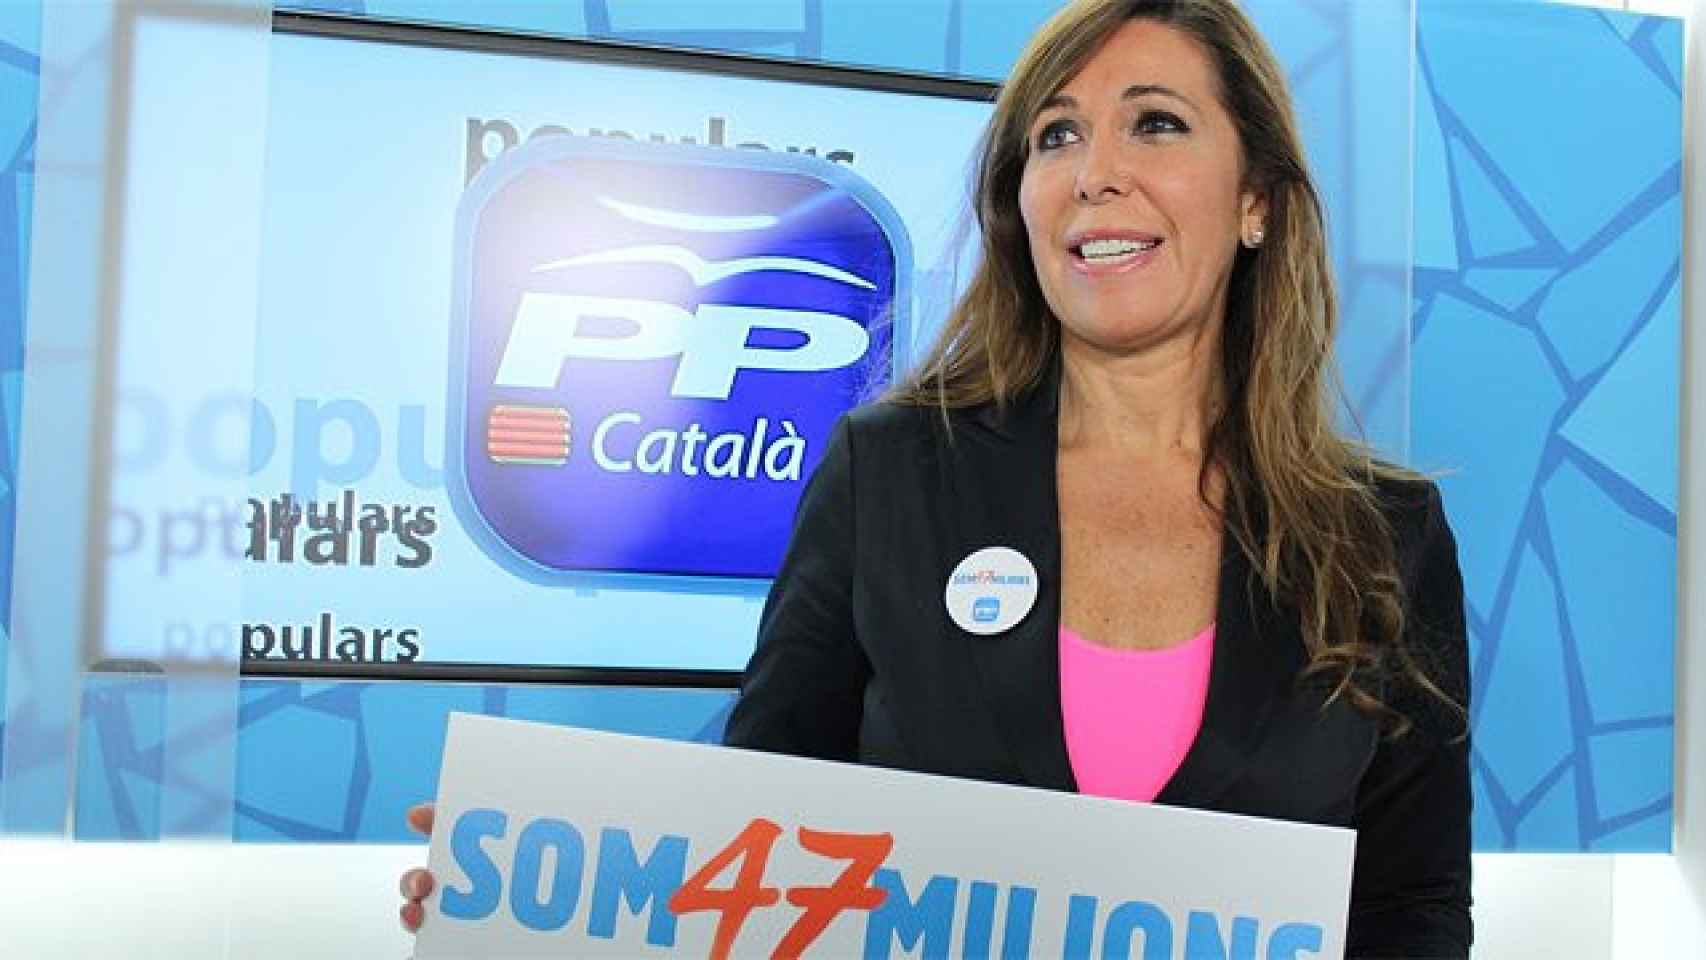 Sánchez-Camacho, presentando el lema del PP catalán Som 47 milions